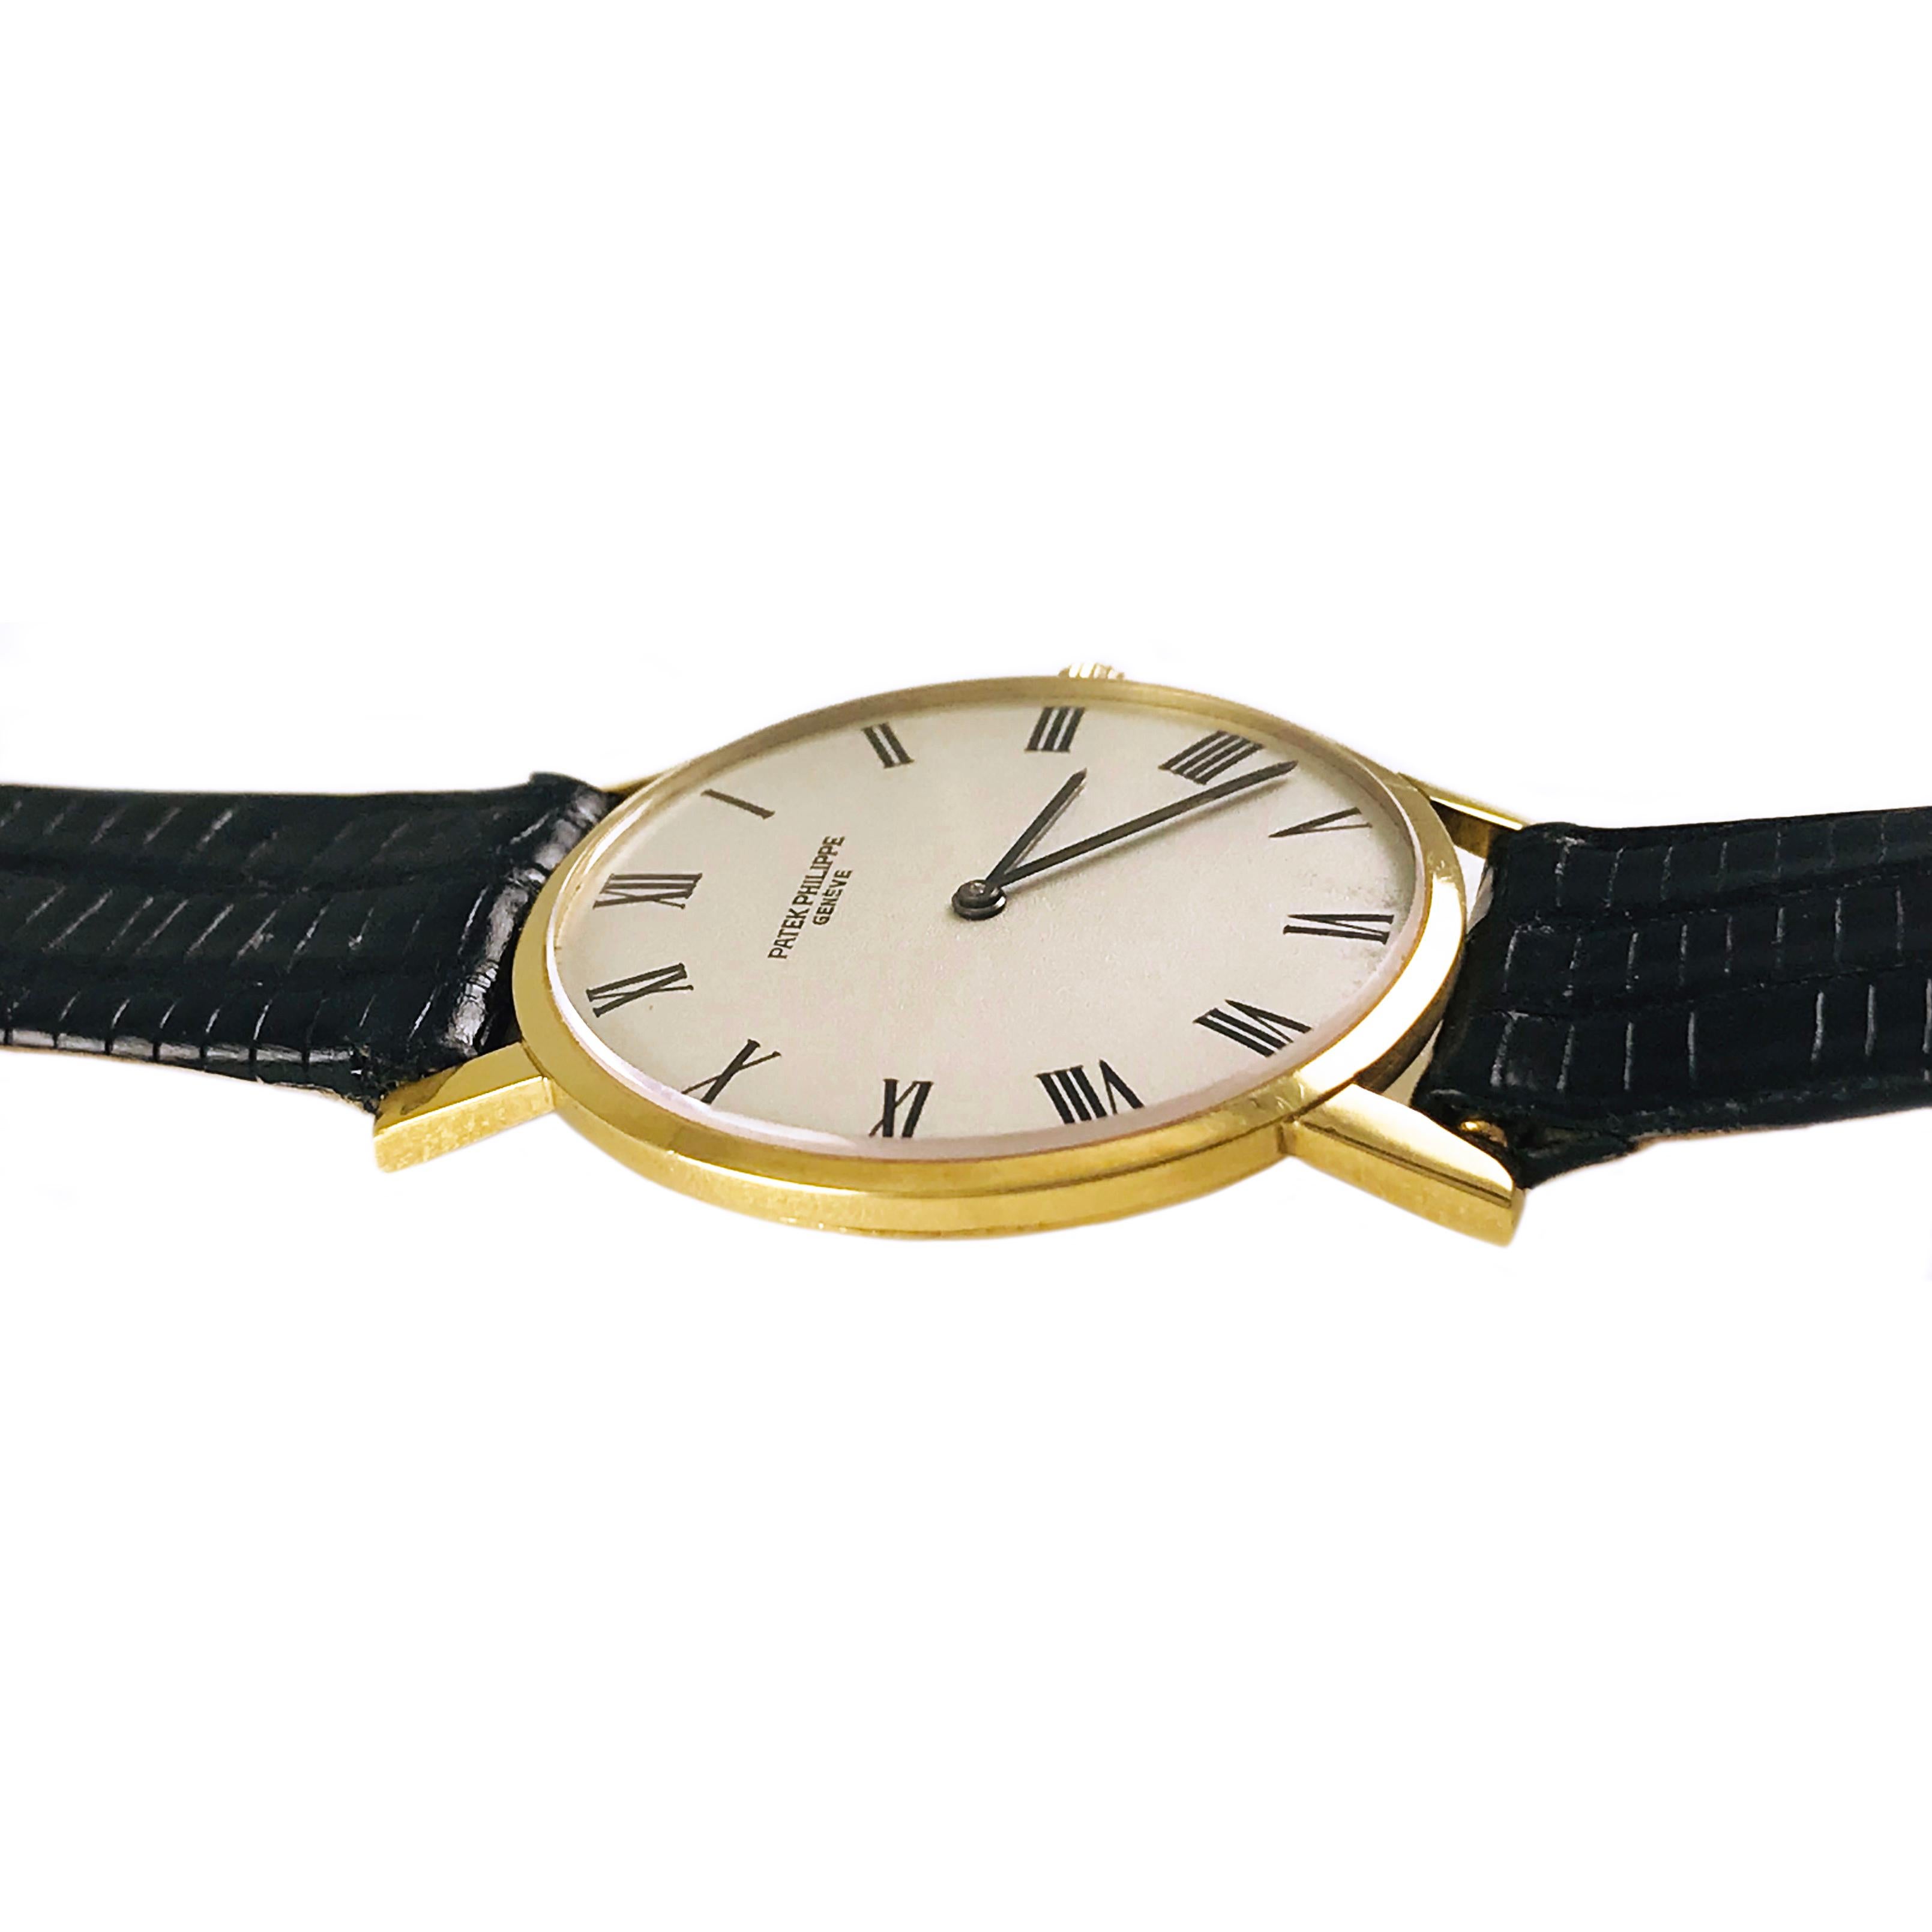 Patek Philippe Calatrava Ultra Thin 18 Karat Gelbgold, 18 Jewel Bewegung Uhr. Dieser Uhrenstil gilt als das Flaggschiff von Patek Philippe. Schwarze Stabzeiger für Stunden und Minuten auf dem Zifferblatt, Handaufzugswerk. Seriennummer #1132435,